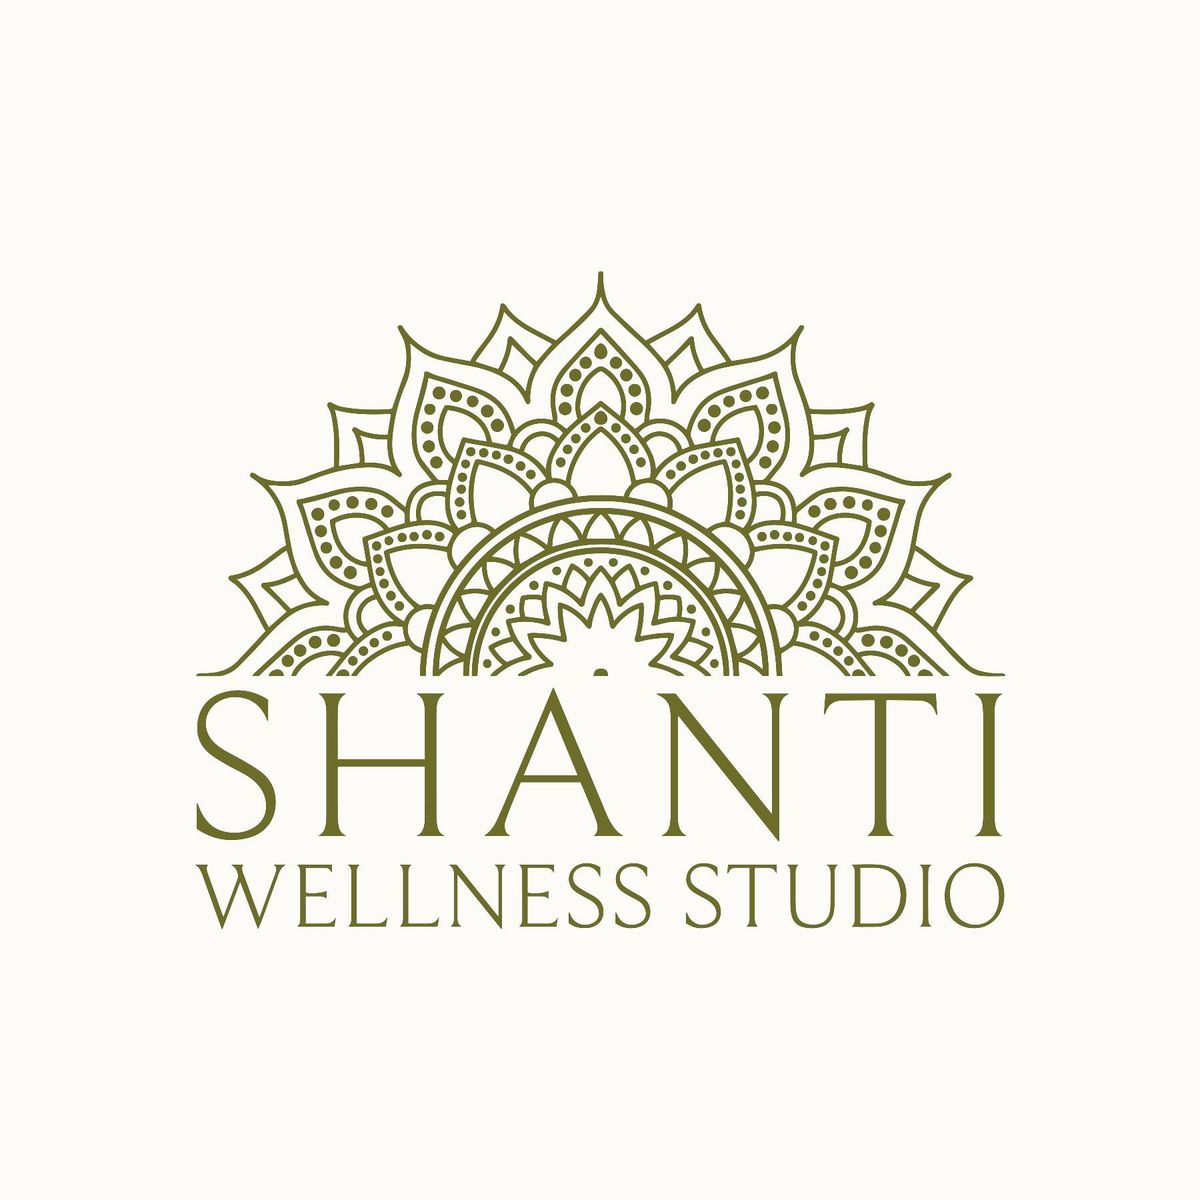 Shanti Wellness Studio Grand Opening!